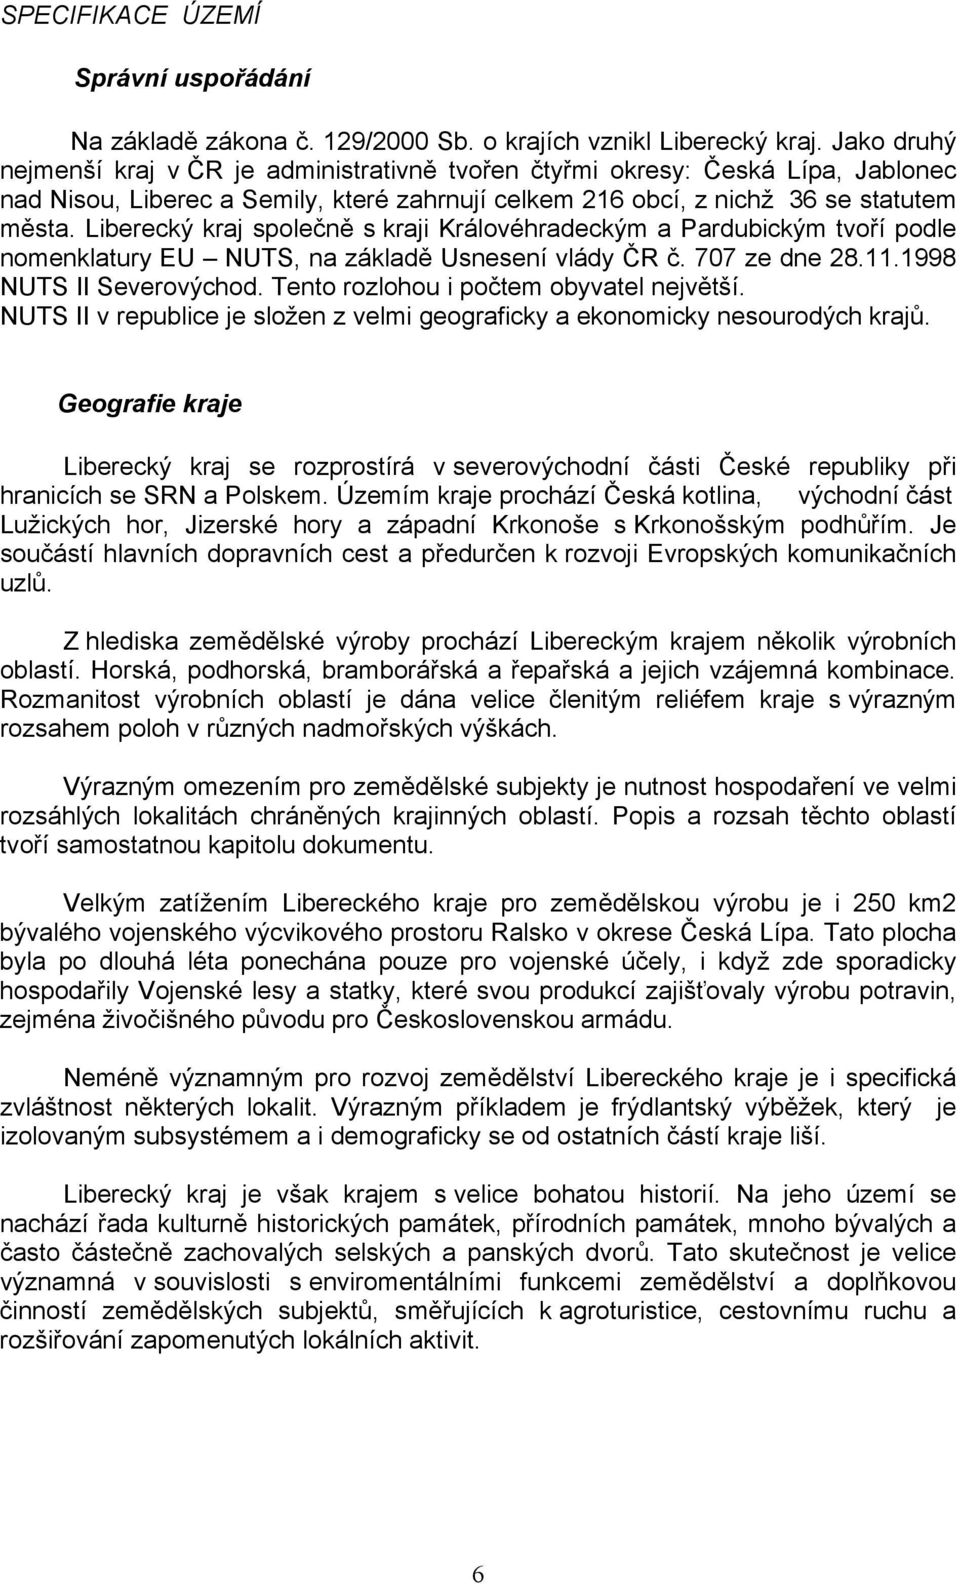 Liberecký kraj společně s kraji Královéhradeckým a Pardubickým tvoří podle nomenklatury EU NUTS, na základě Usnesení vlády ČR č. 707 ze dne 28.11.1998 NUTS II Severovýchod.